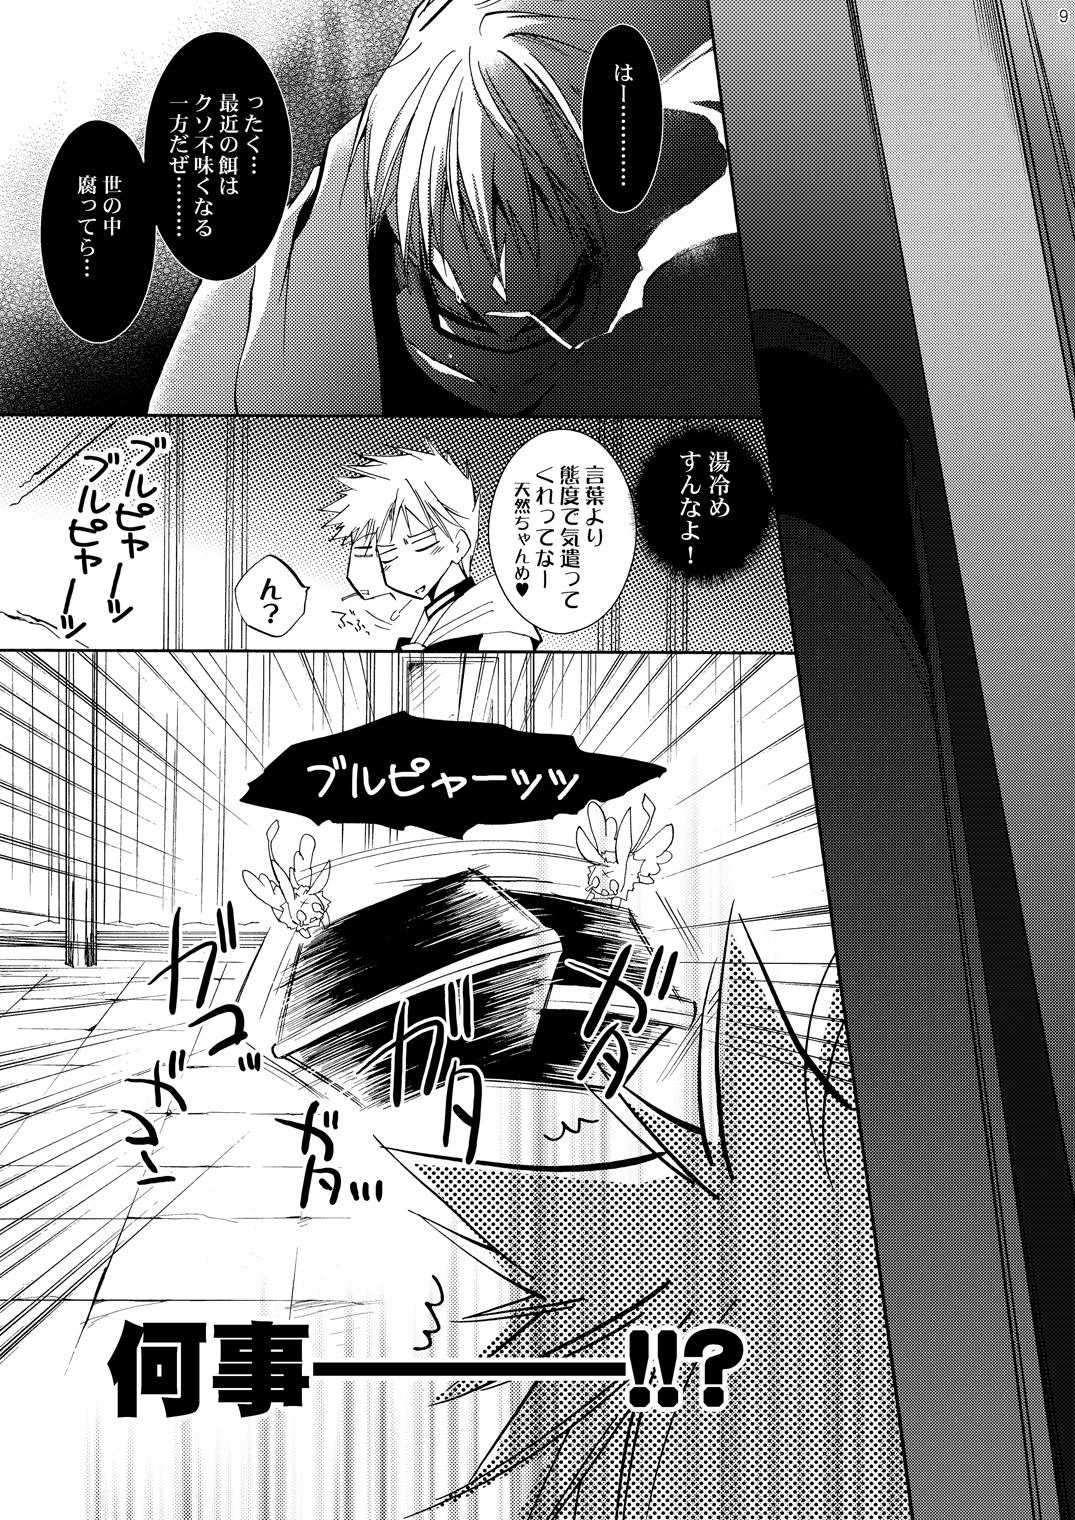 Free Hananemu no itsu waga mune ni kimi nemuru - 07-ghost Boys - Page 8